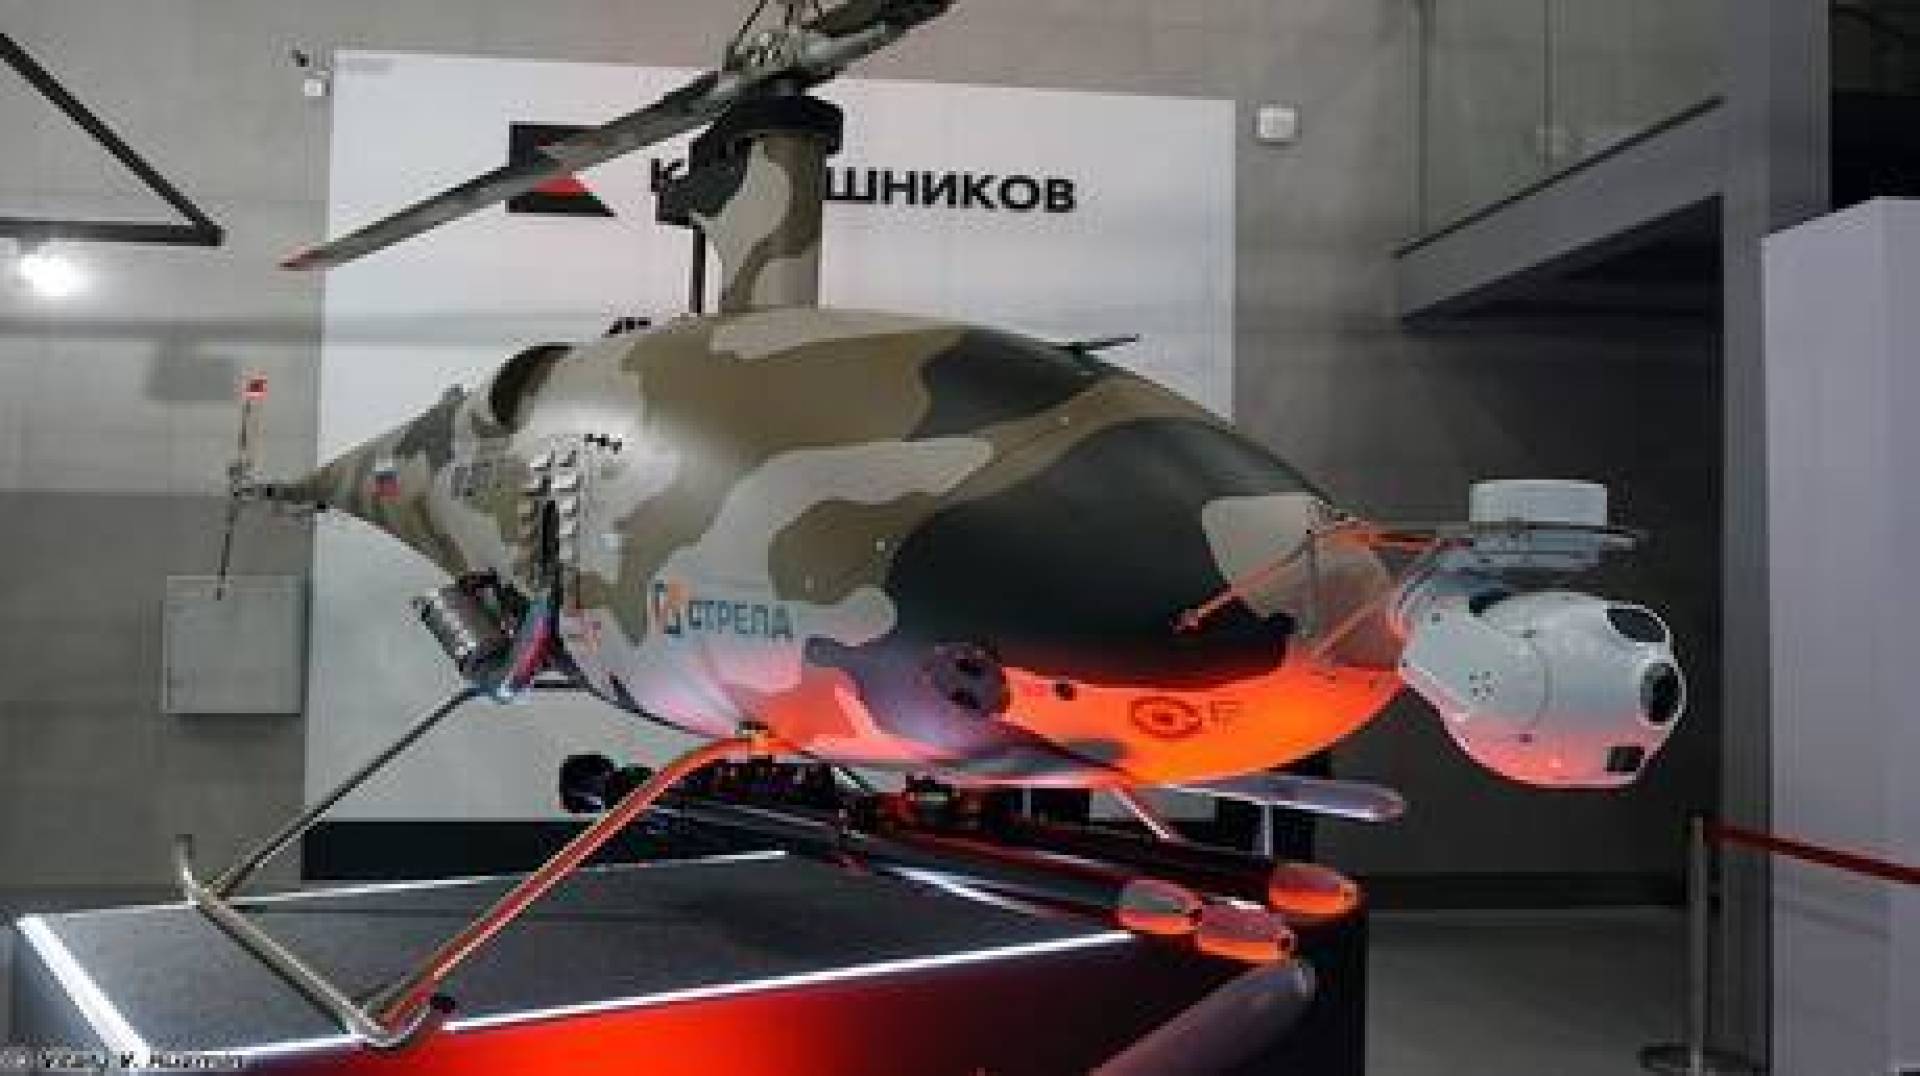 بالفيديو روسيا تبدأ بإنتاج المروحيات المسيرة الذكية